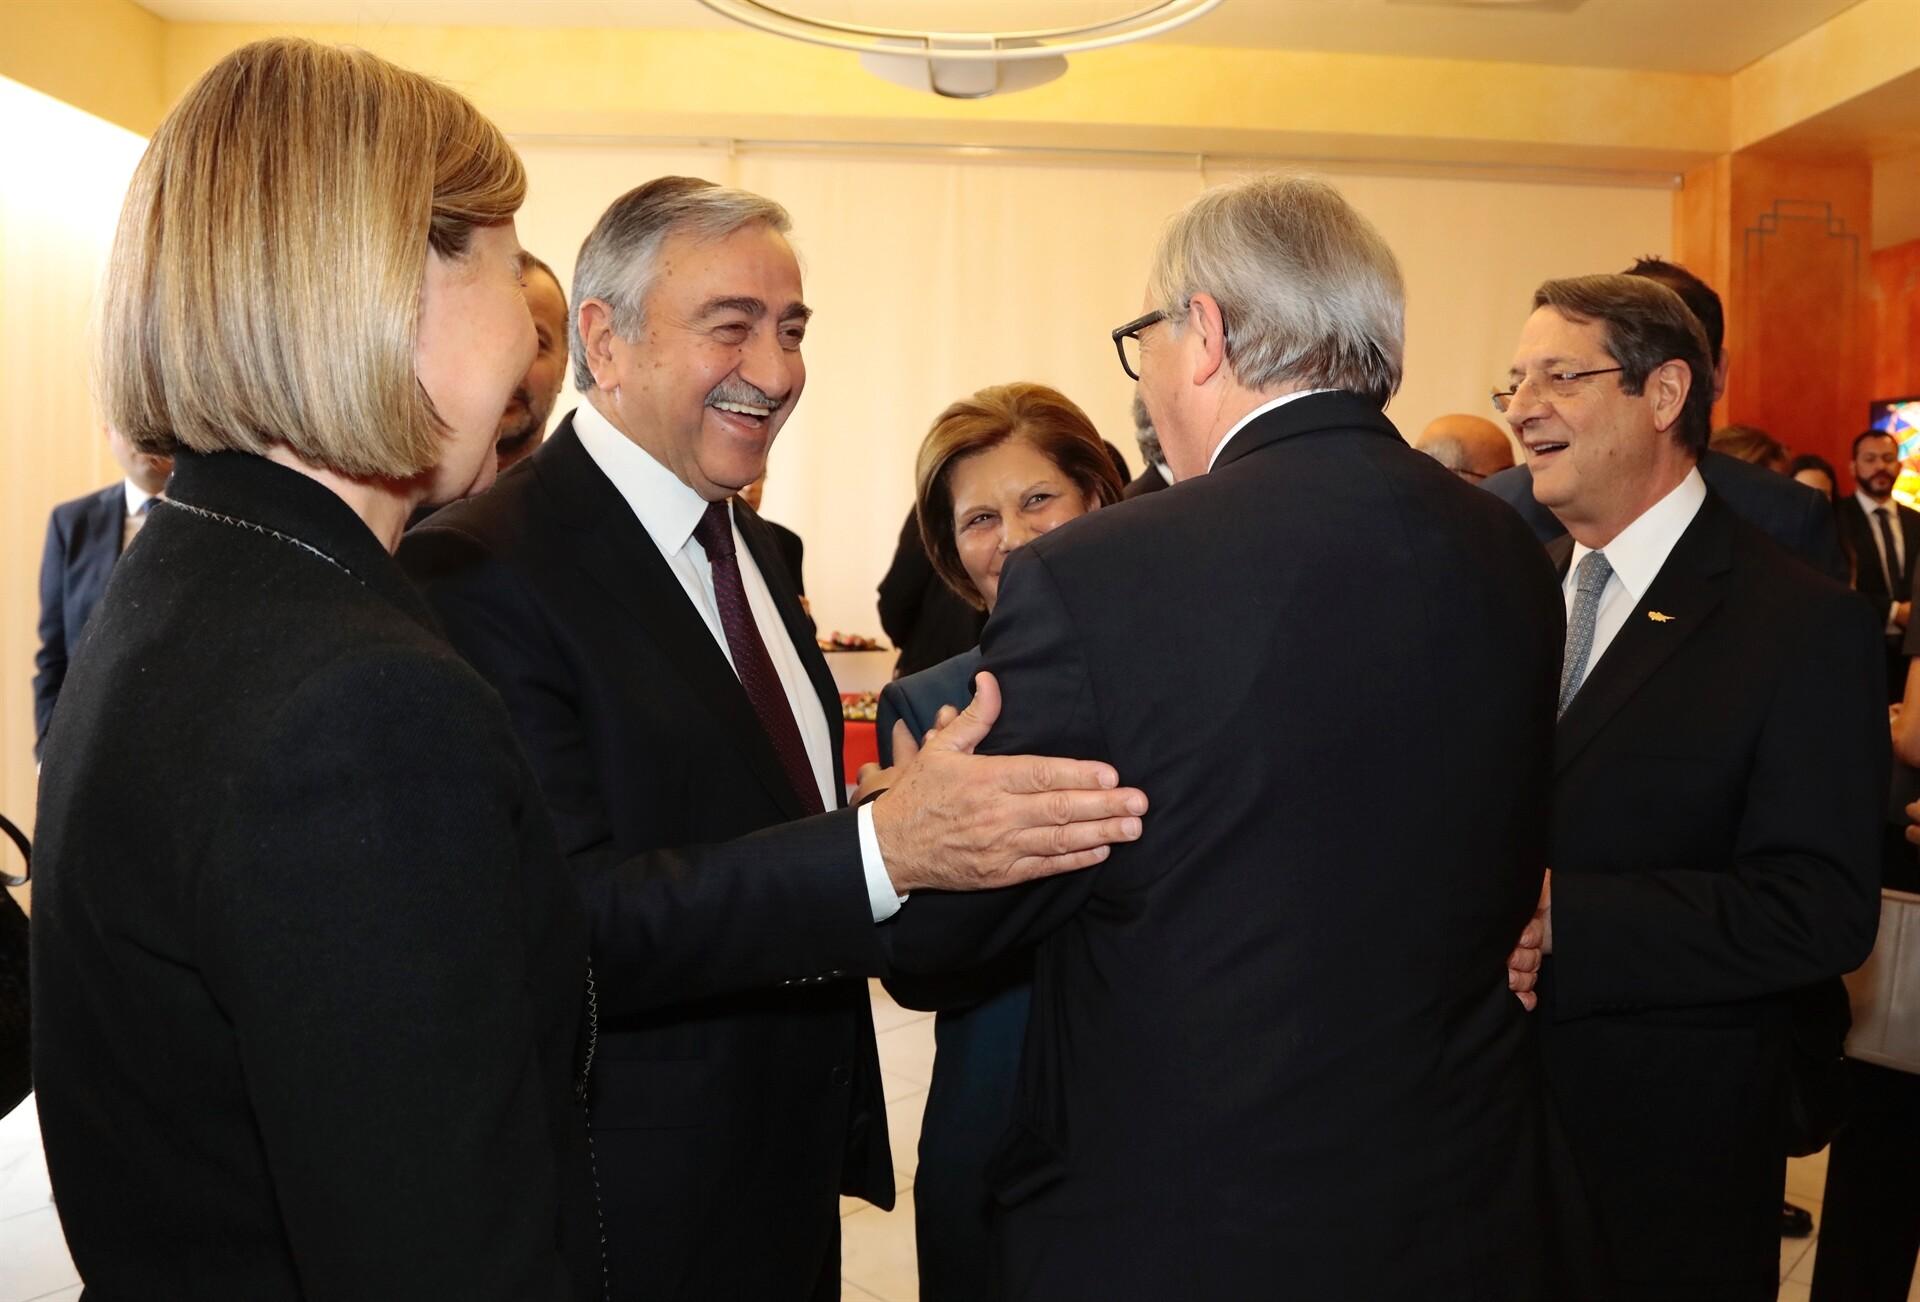 BM'den 'Kıbrıs Konferansı' açıklaması